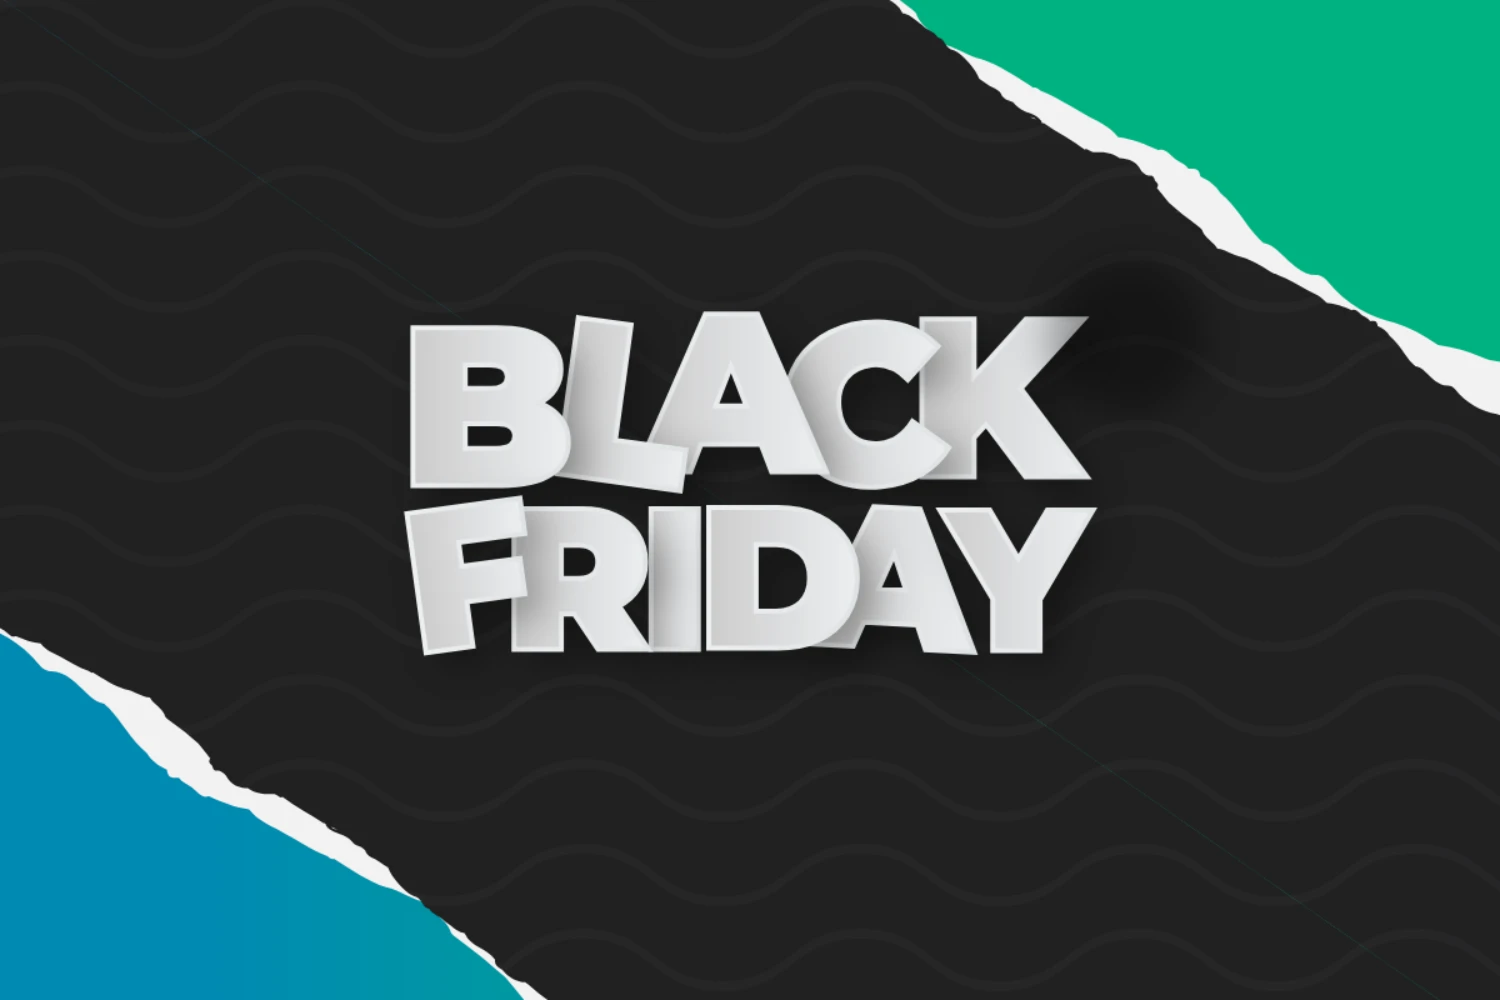 Black Friday Offer image